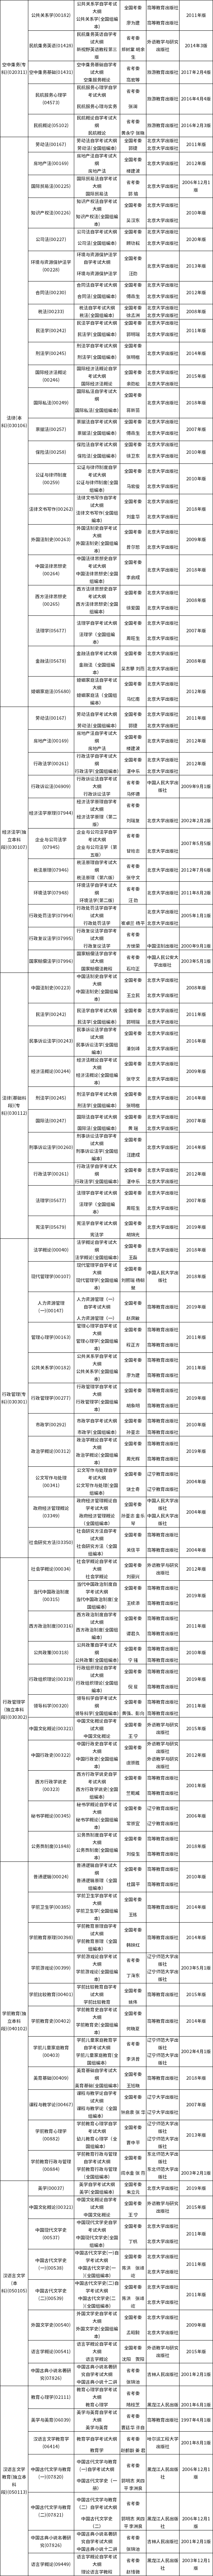 黑龙江省2021年4月高等教育自学考试大纲和教材目录